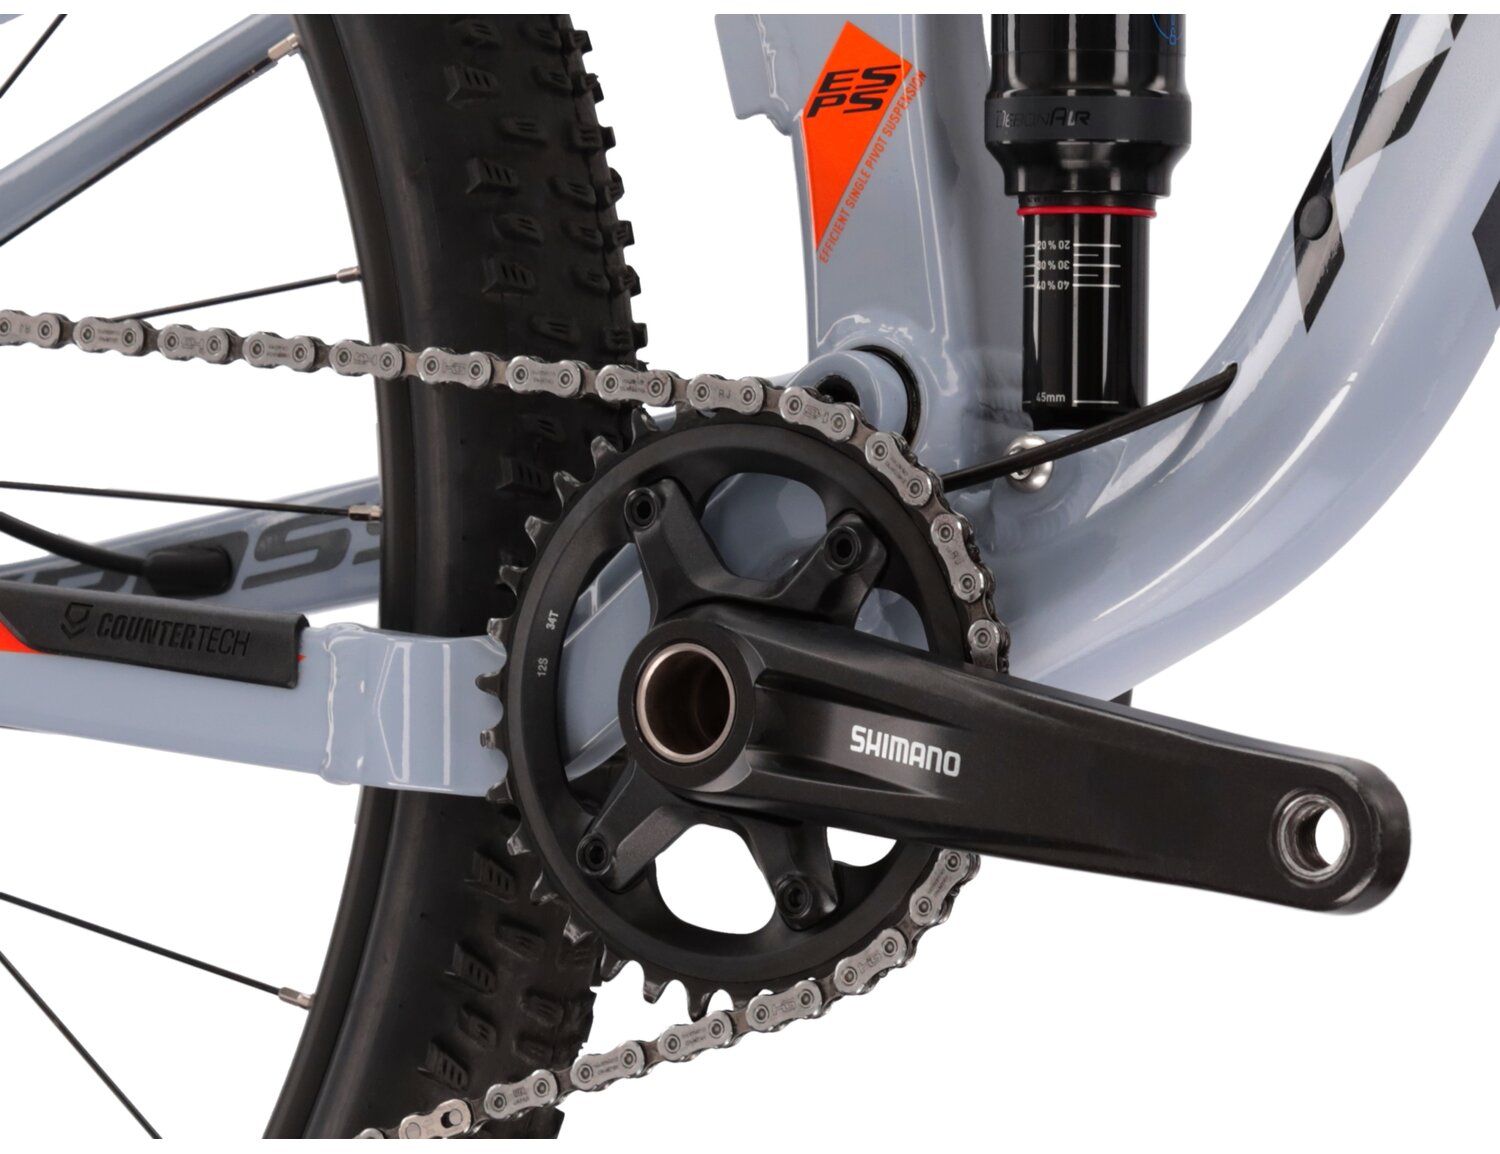  Tylny amortyzator Rock Shox Deluxe Select RL oraz mechanizm korbowy Shimano MT510 w rowerze górskim MTB XC KROSS Earth 2.0 